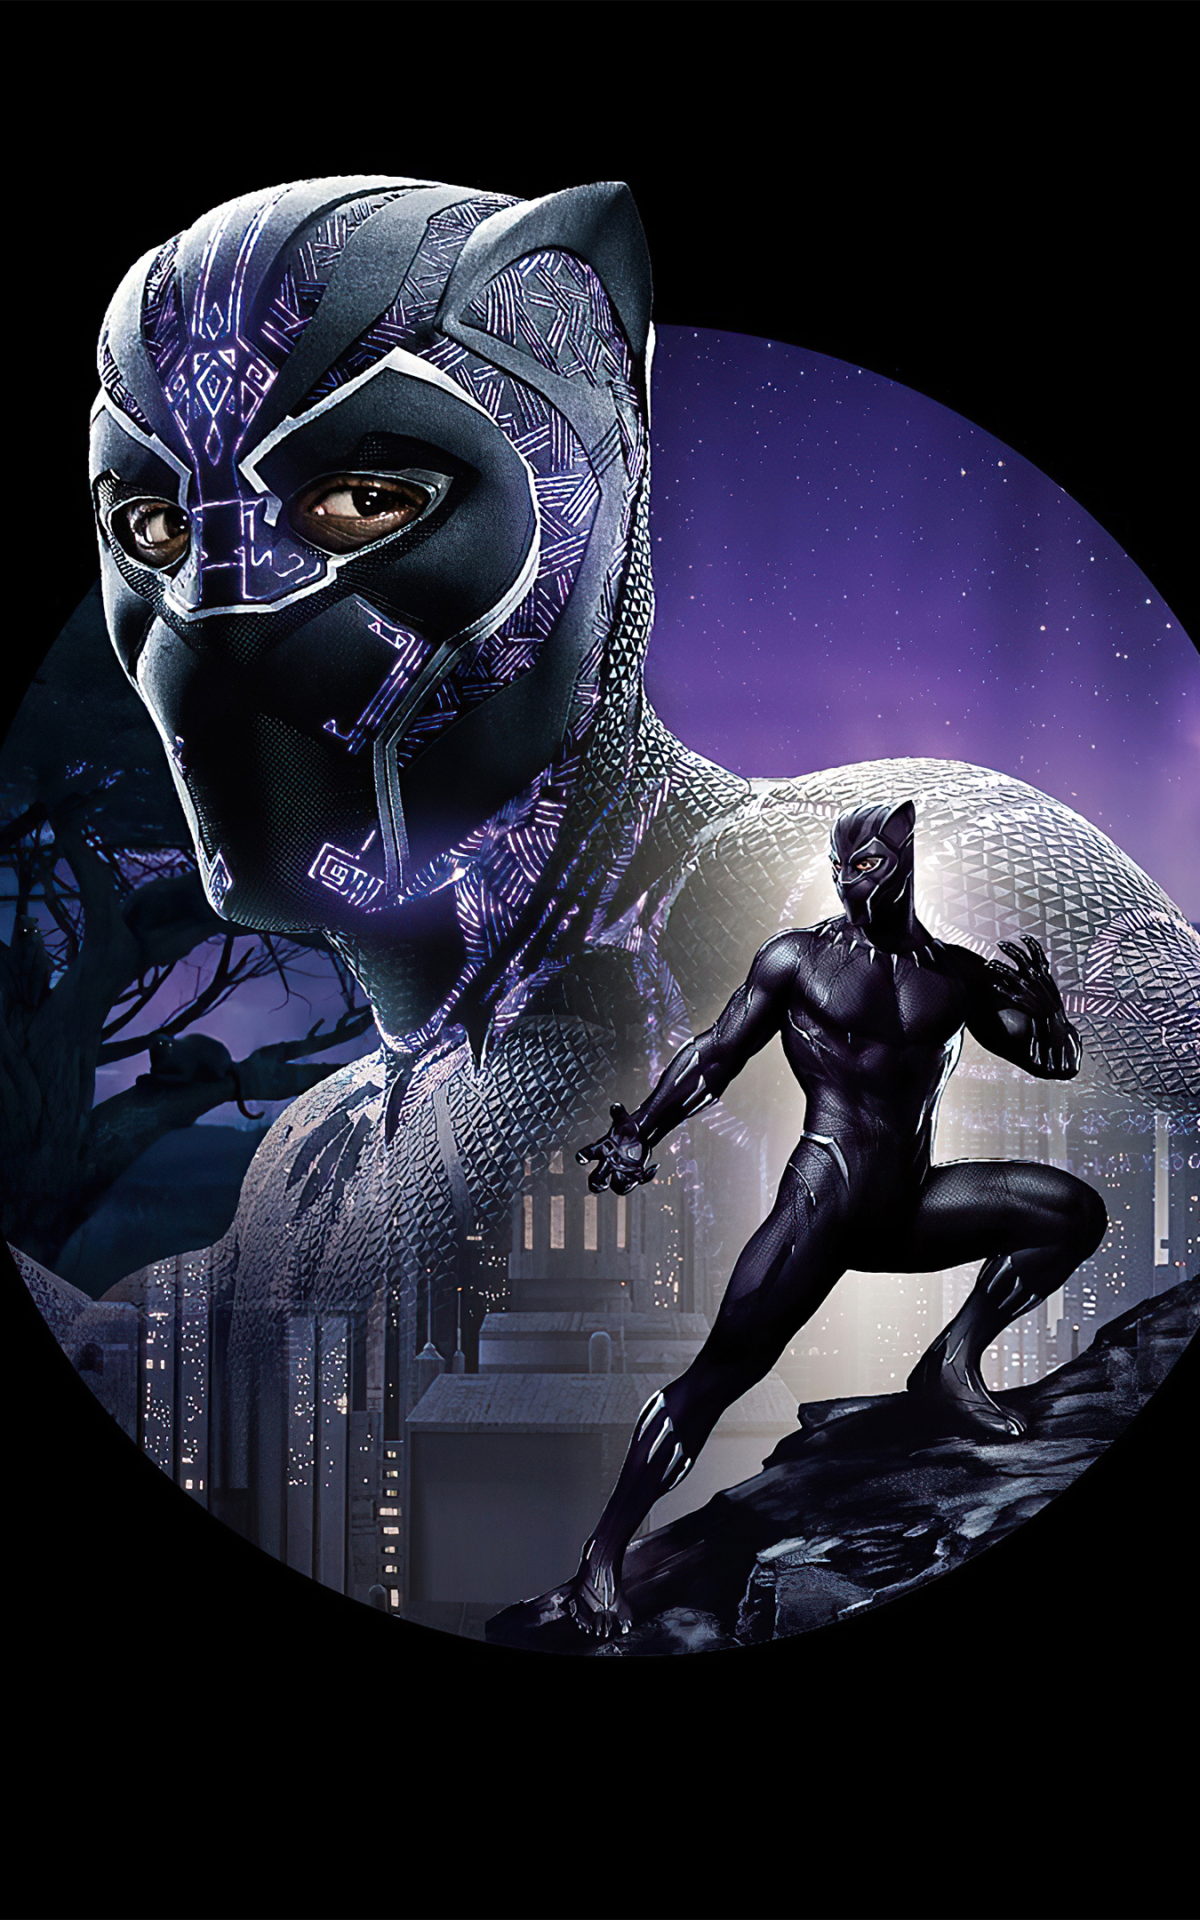 Descarga gratuita de fondo de pantalla para móvil de Películas, Pantera Negra (Marvel Comics), Pantera Negra, T'challa, Chadwick Boseman.